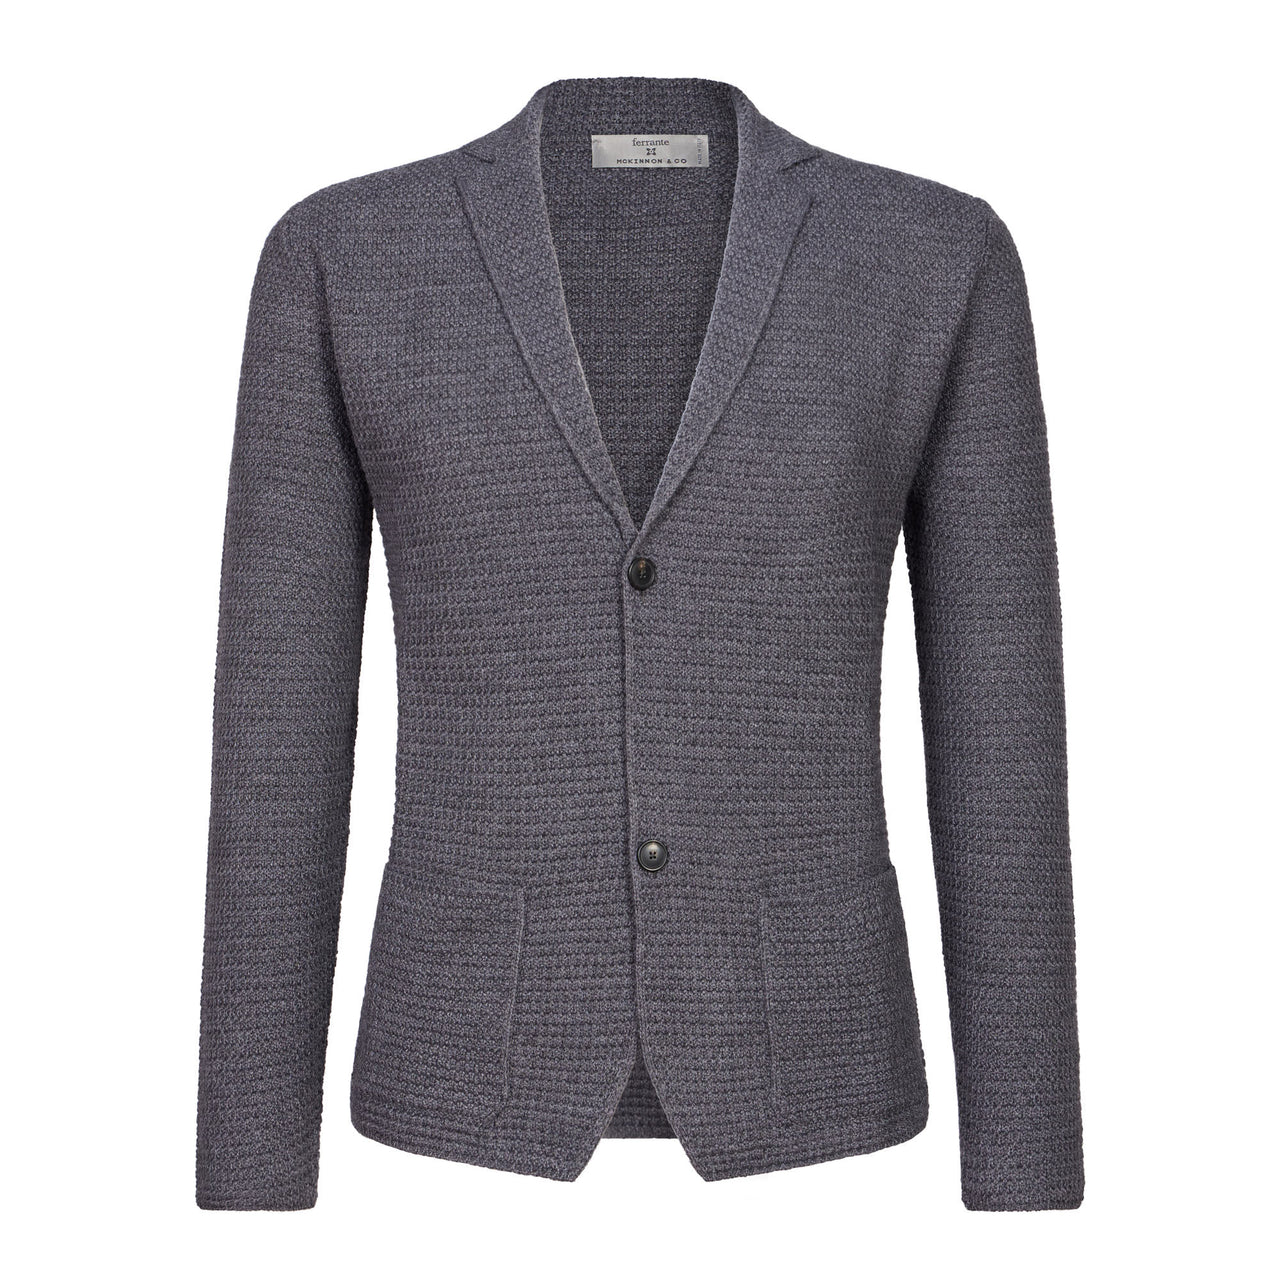 MCKINNON & CO X FERRANTE Buttoned Wool Cardigan GREY